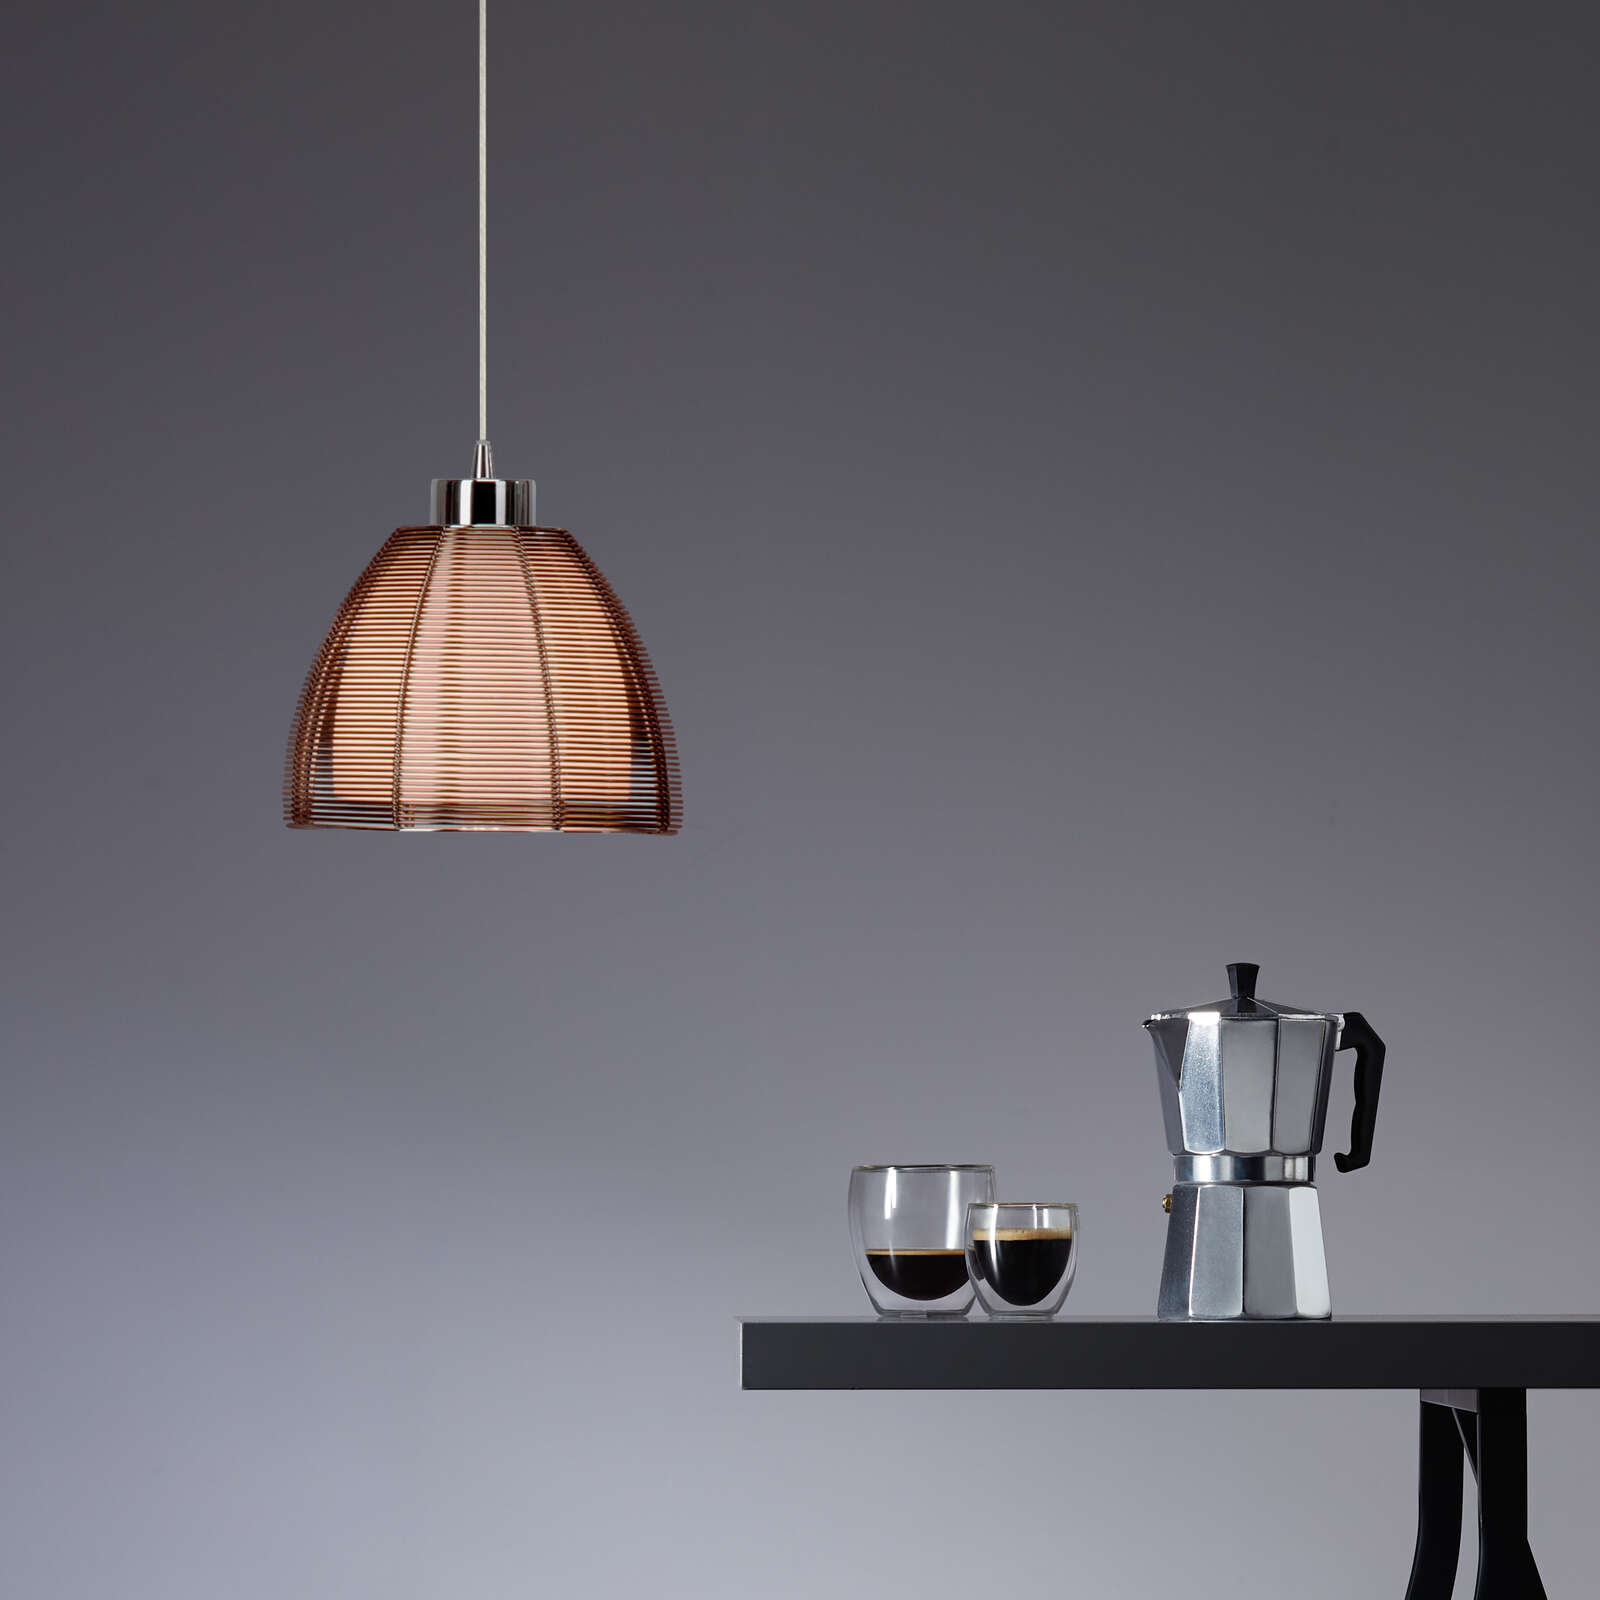             Glazen hanglamp - Maxime 2 - Bruin
        